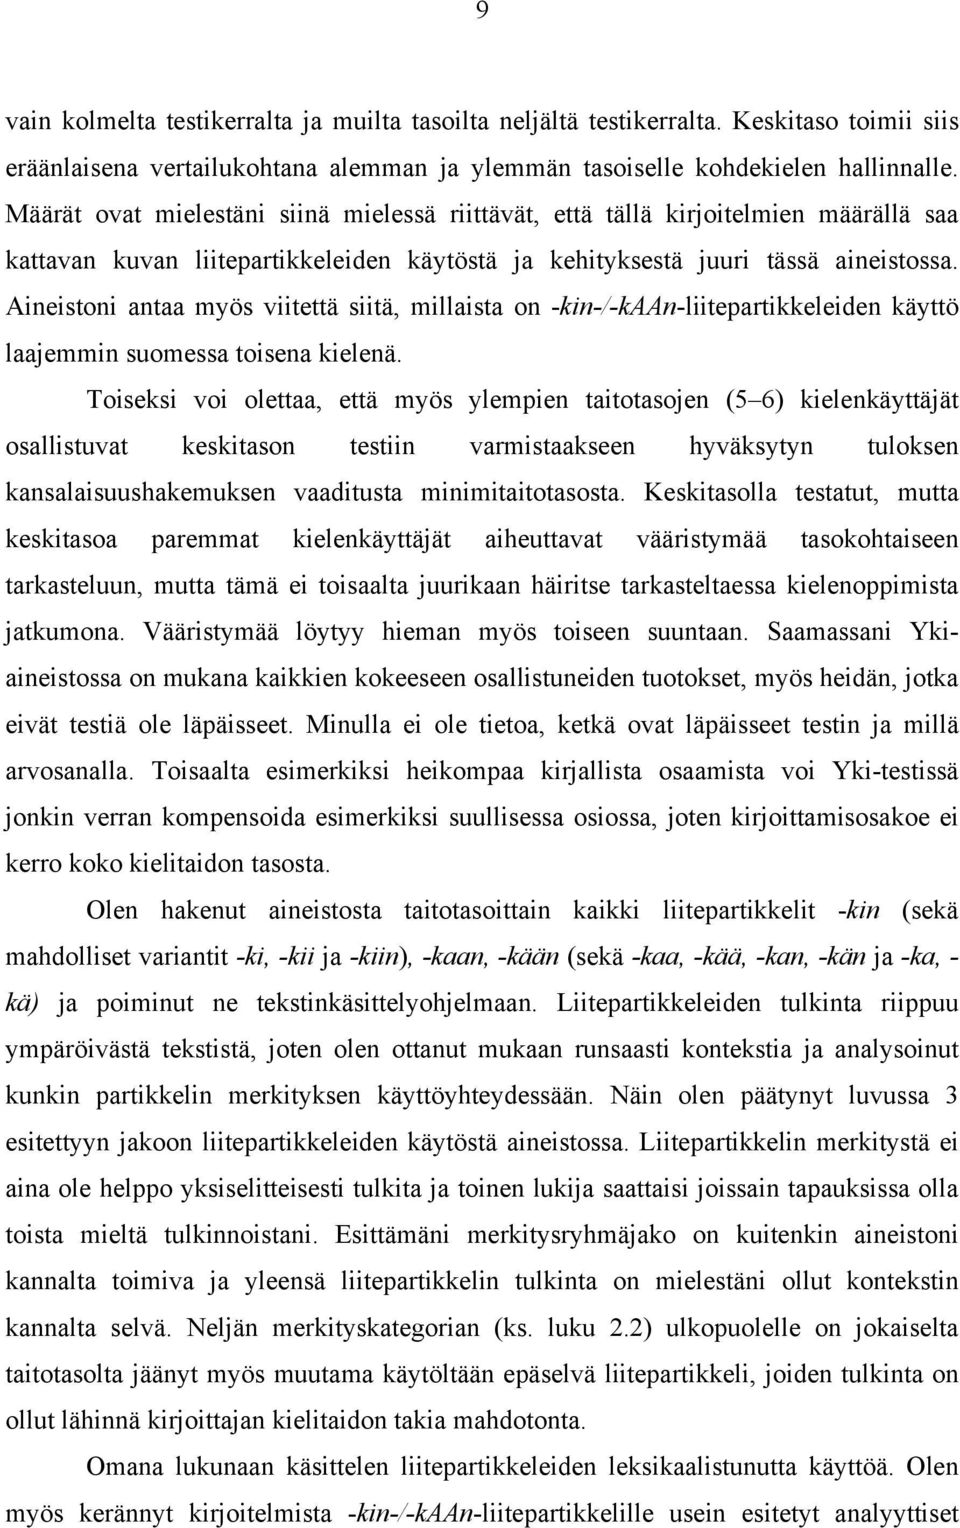 Aineistoni antaa myös viitettä siitä, millaista on -kin-/-kaan-liitepartikkeleiden käyttö laajemmin suomessa toisena kielenä.